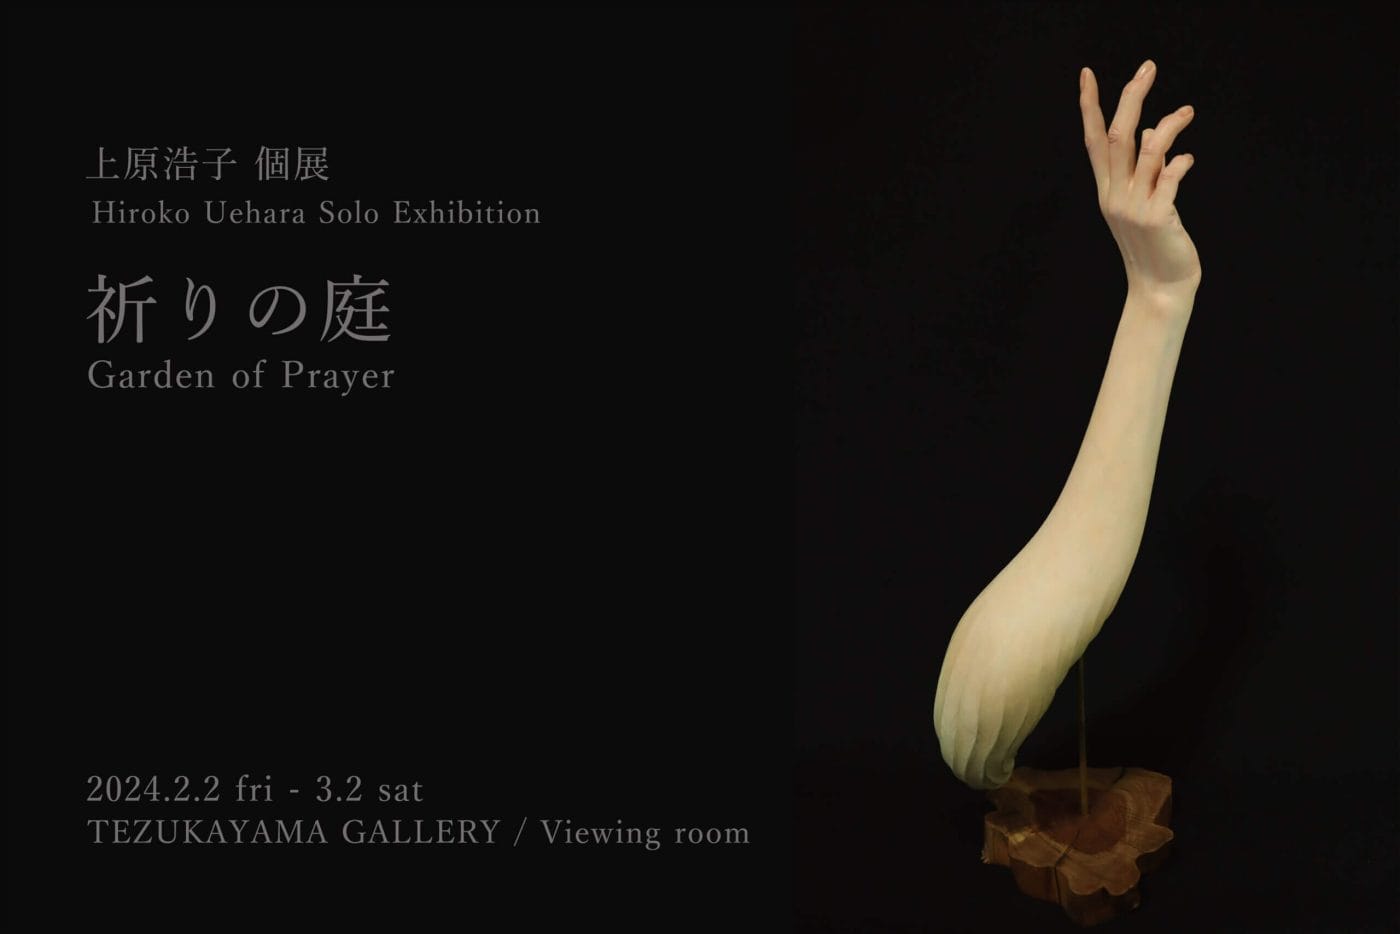 植物と人間の融合をテーマに制作している上原浩子の個展「祈りの庭」、TEZUKAYAMA GALLERYにて開催。「祈り」をテーマに制作した新作を発表。